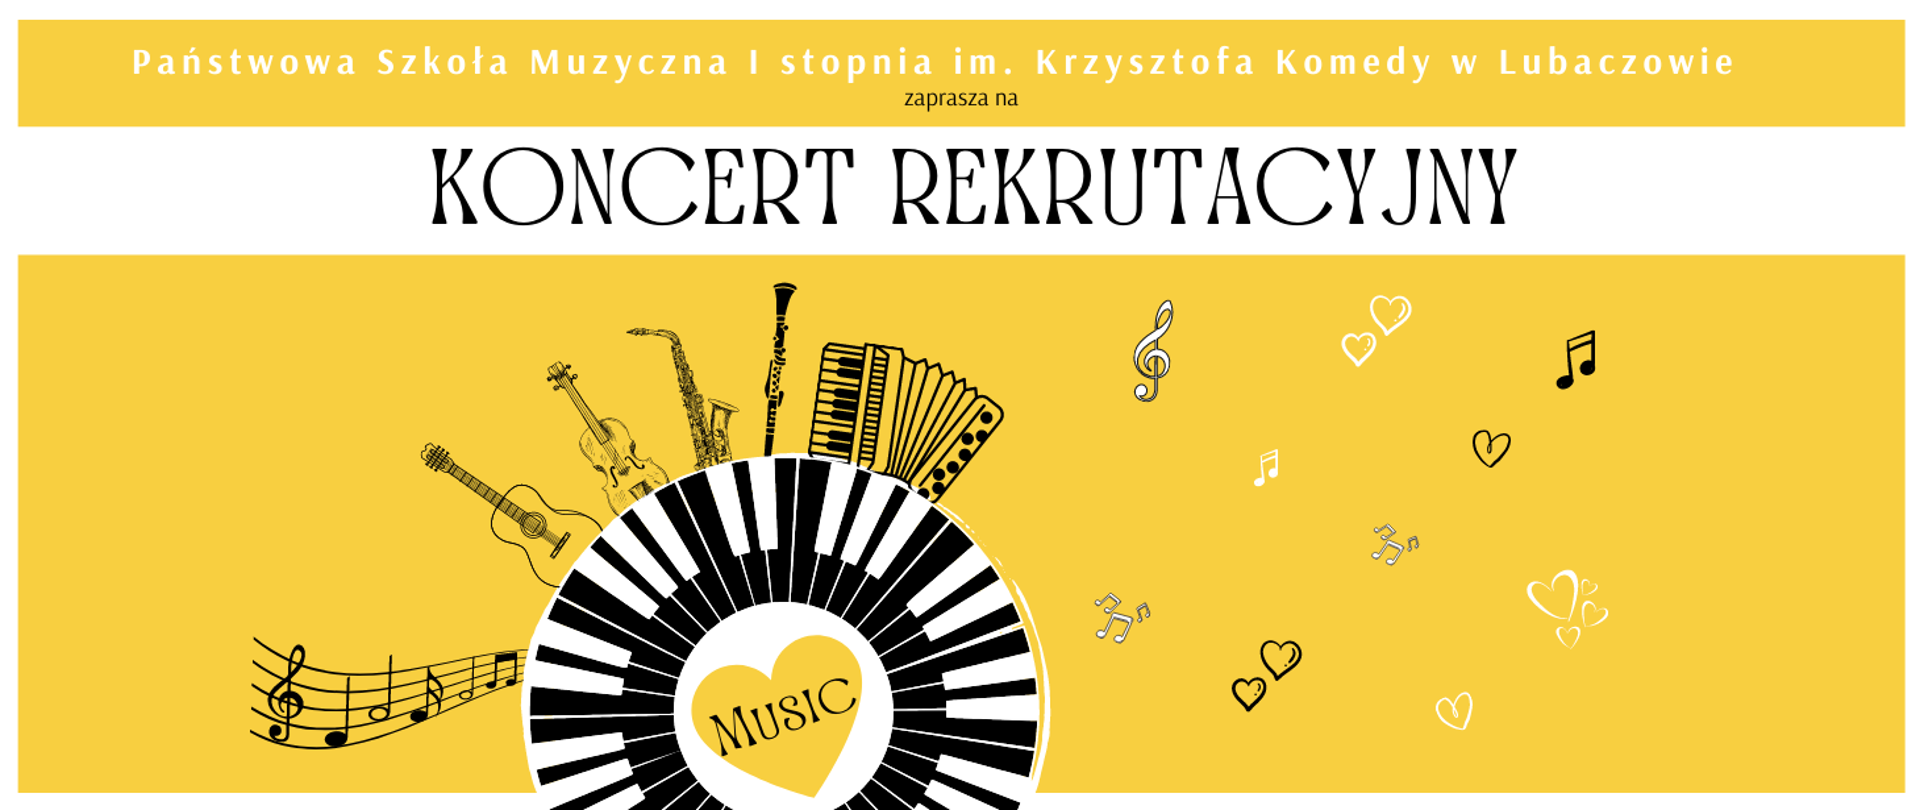 Fragment plakatu koncertu rekrutacyjnego na żółtym tle z ikonografiami instrumentów muzycznych